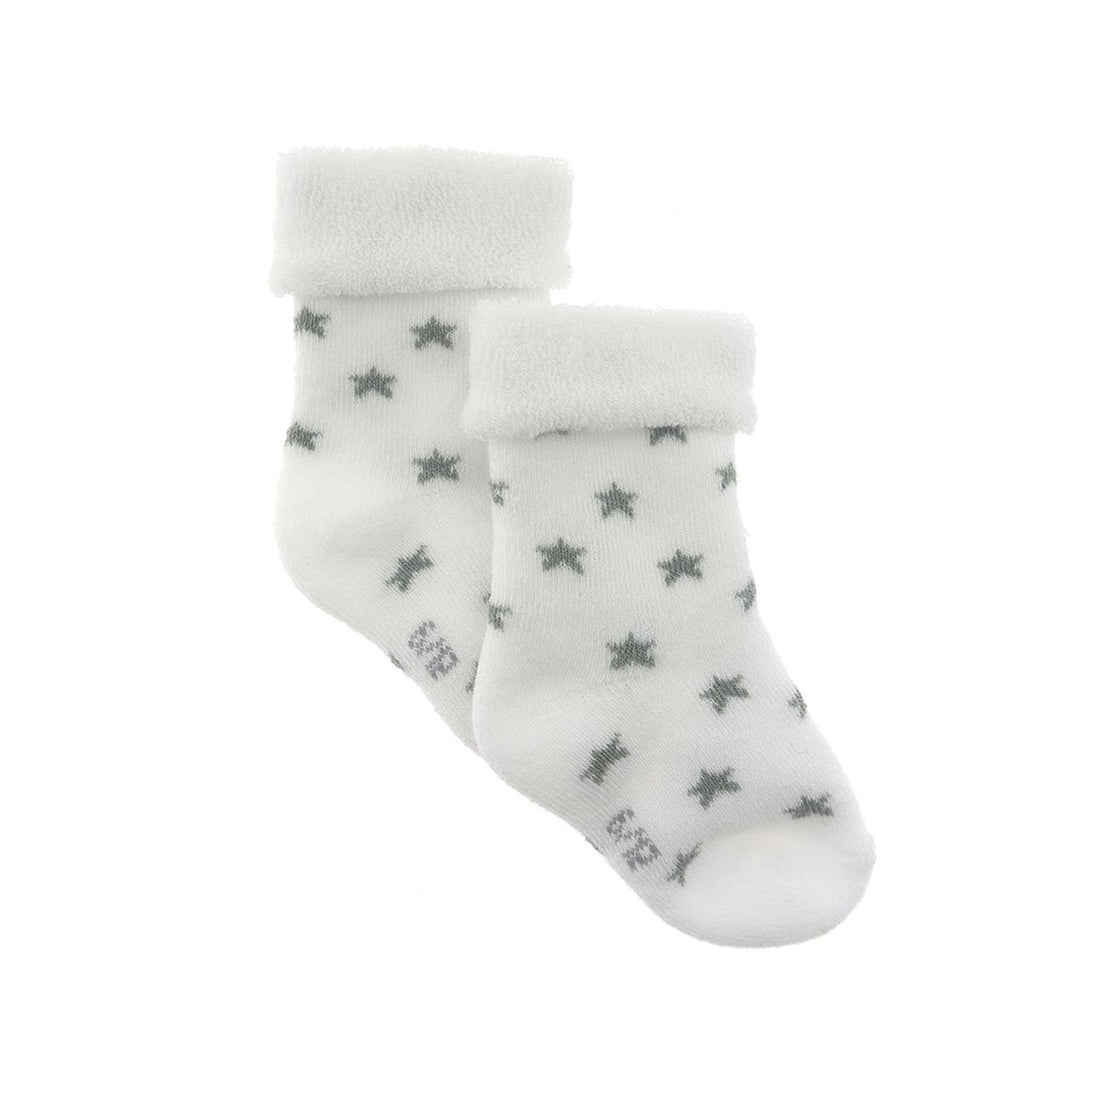 cambrass-set-3-socks-for-baby-star-grey-sz-000-1718-rjc-44177- (4)